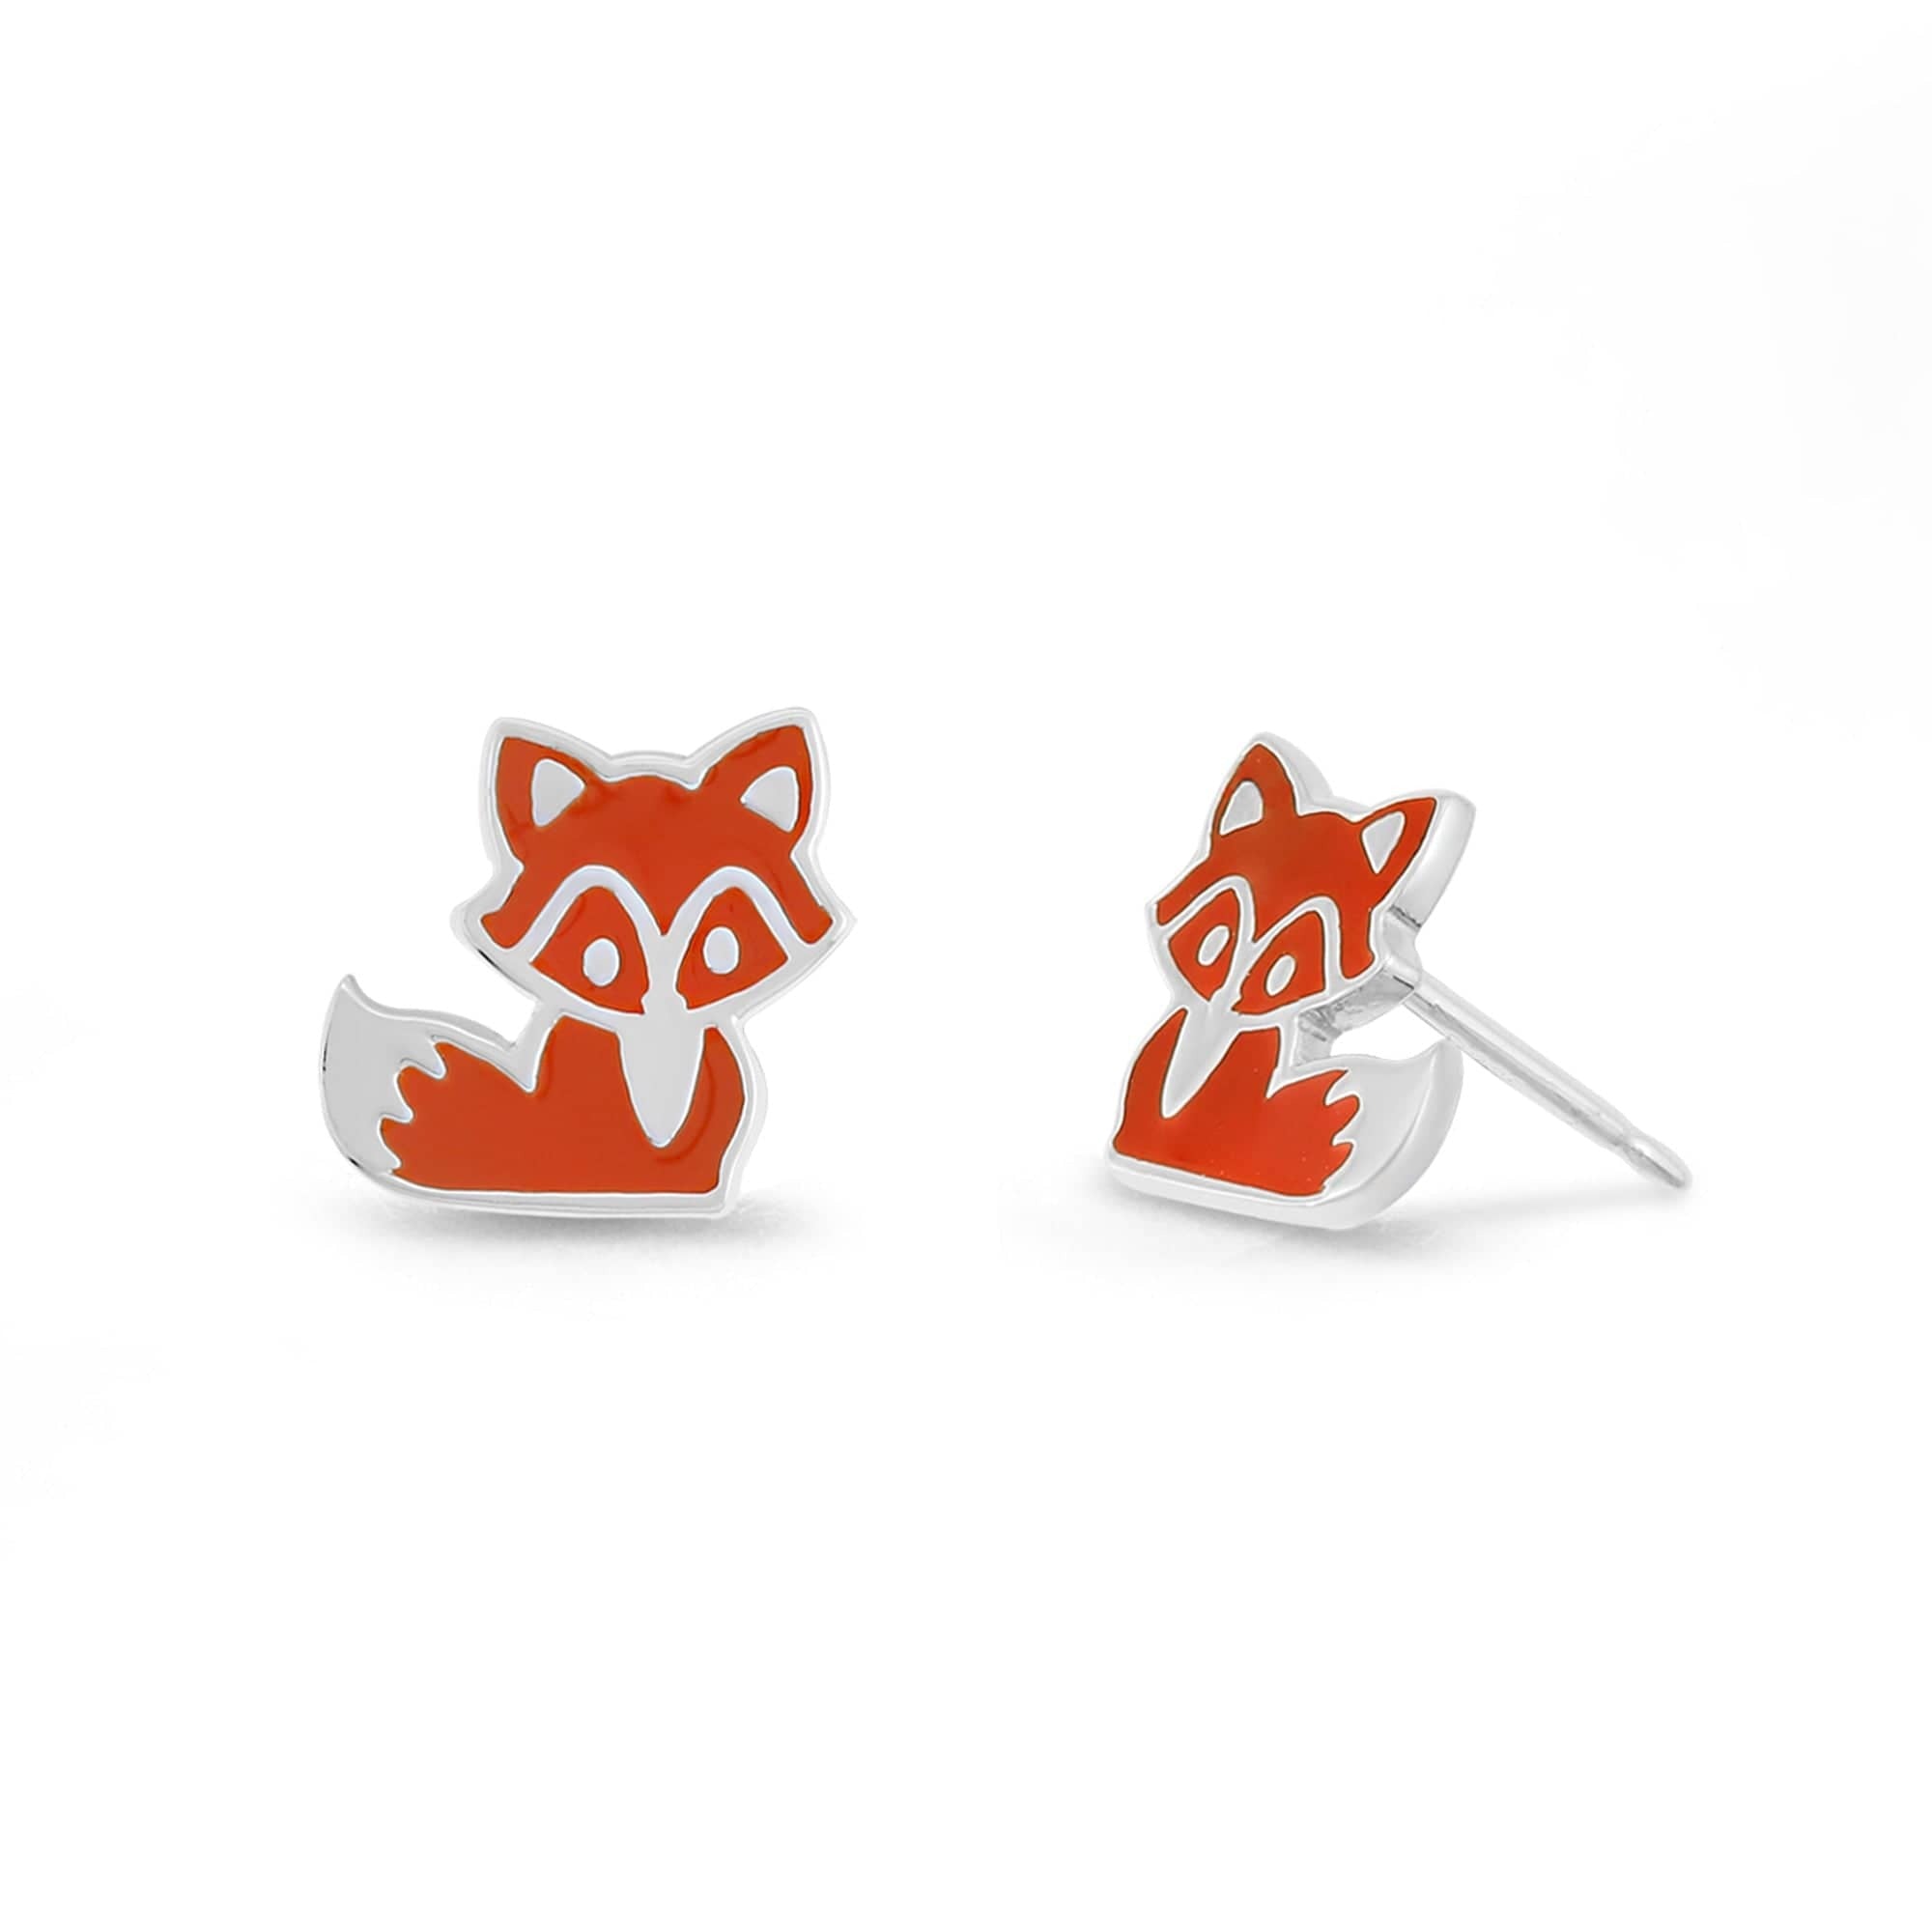 Boma Jewelry Earrings Orange Fox Stud Earrings